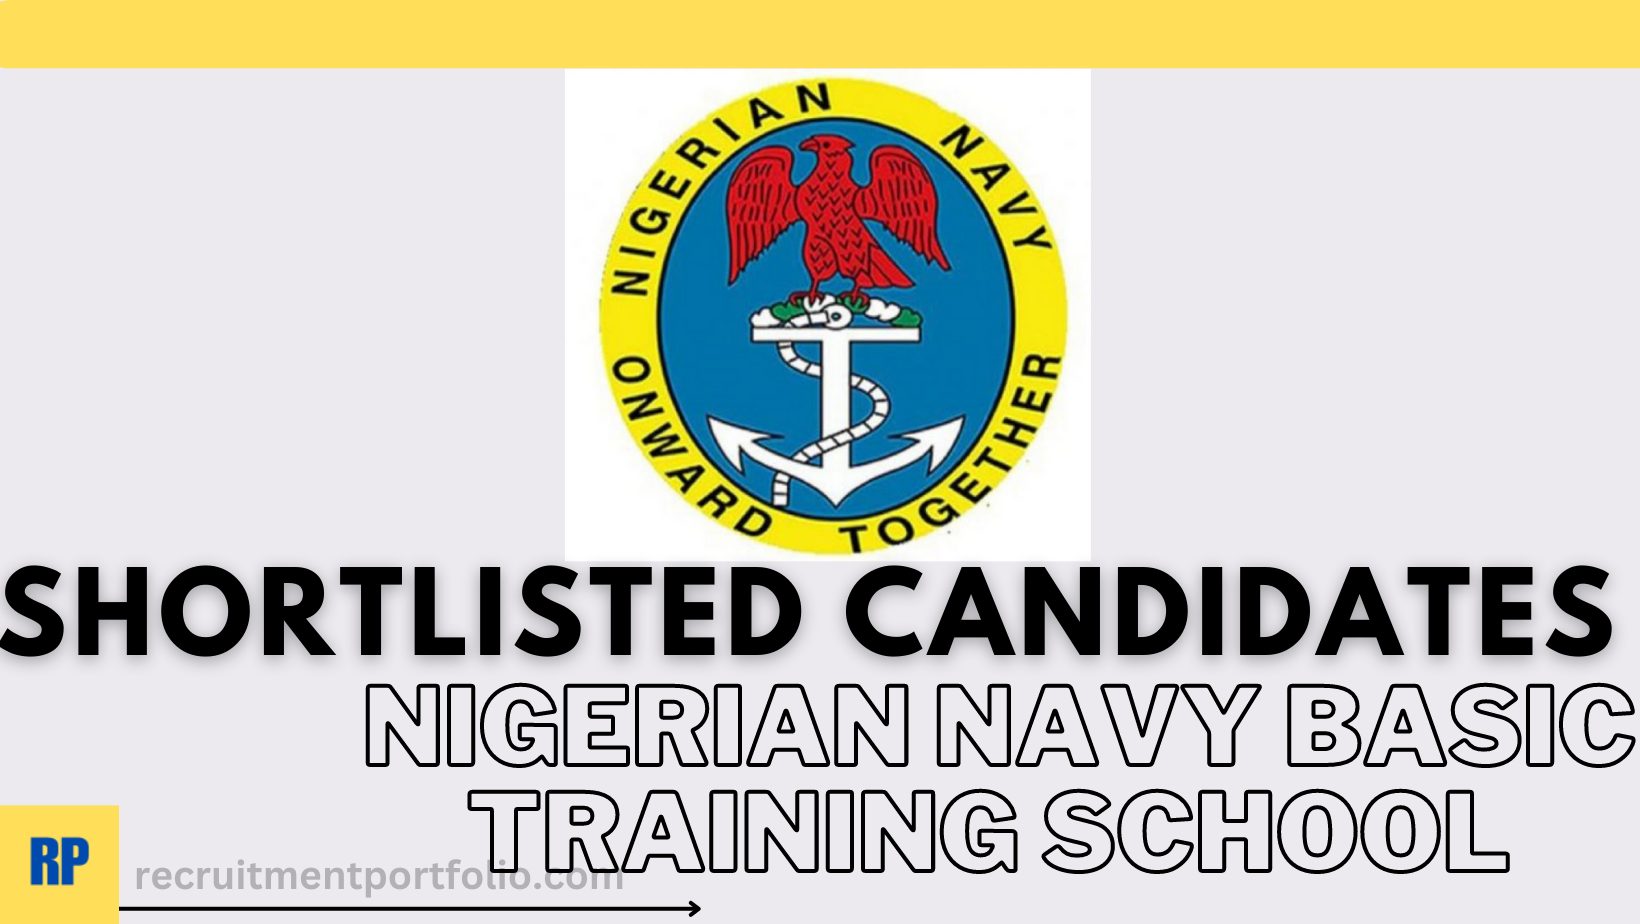 Nigerian Navy Basic Training School